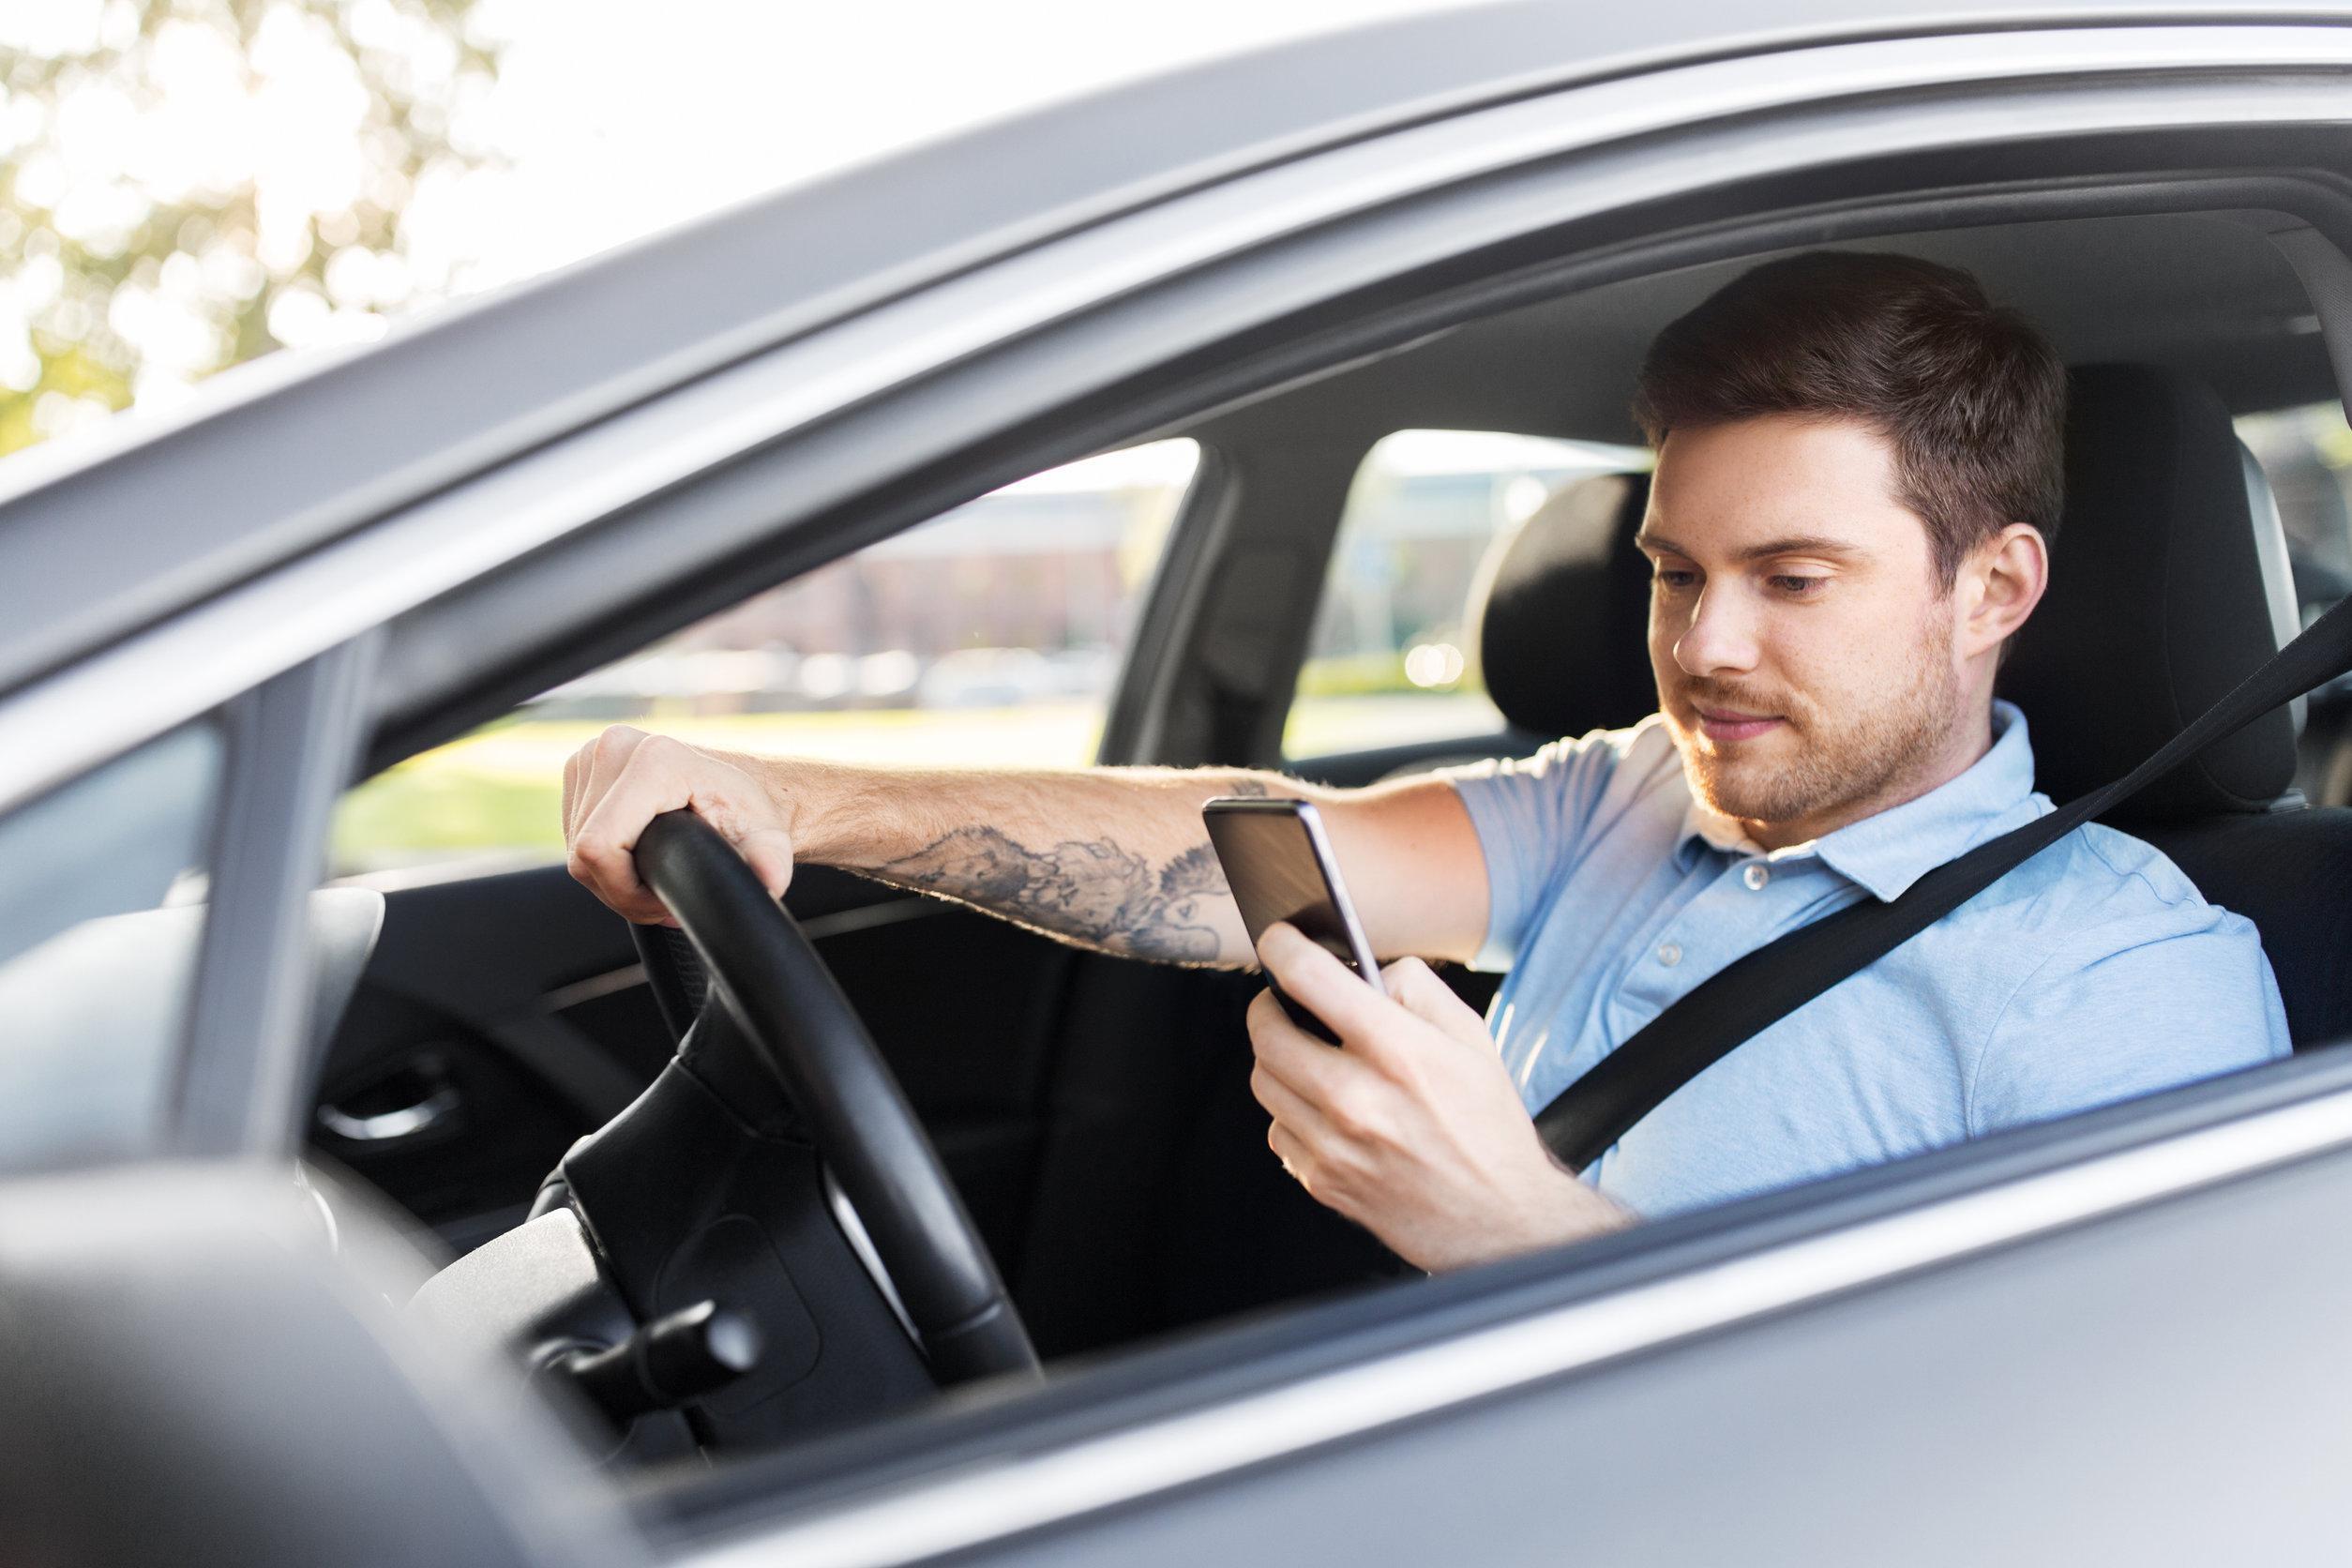 Guida distratta: oltre il 50% dei conducenti parla o legge alla guida